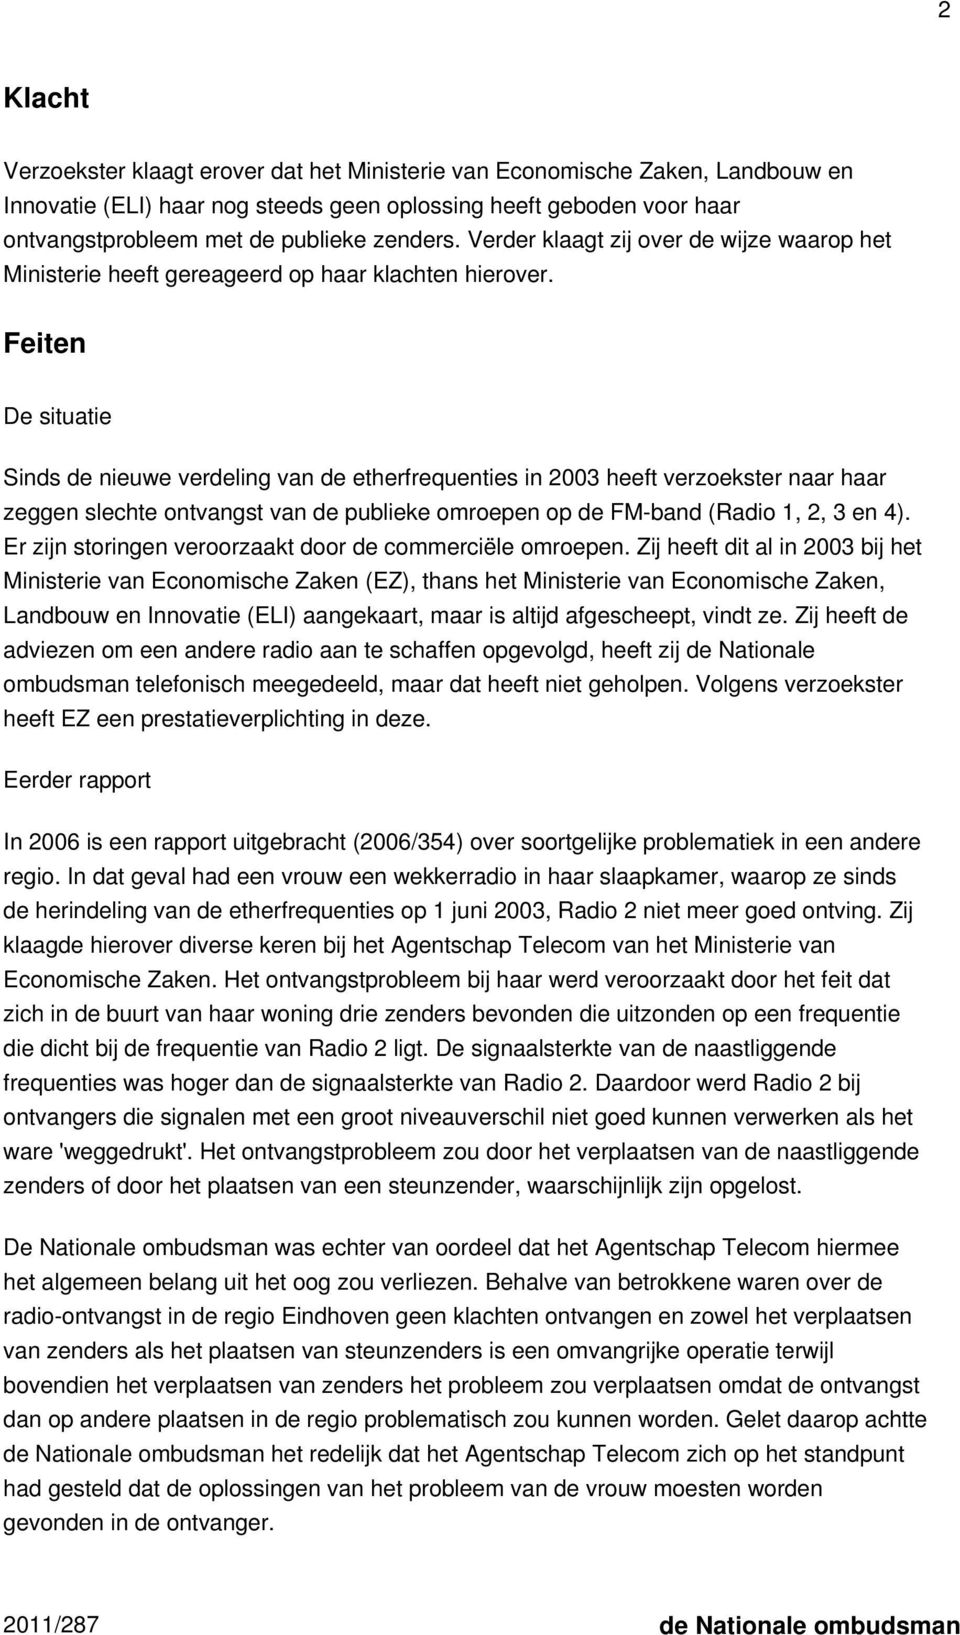 Feiten De situatie Sinds de nieuwe verdeling van de etherfrequenties in 2003 heeft verzoekster naar haar zeggen slechte ontvangst van de publieke omroepen op de FM-band (Radio 1, 2, 3 en 4).